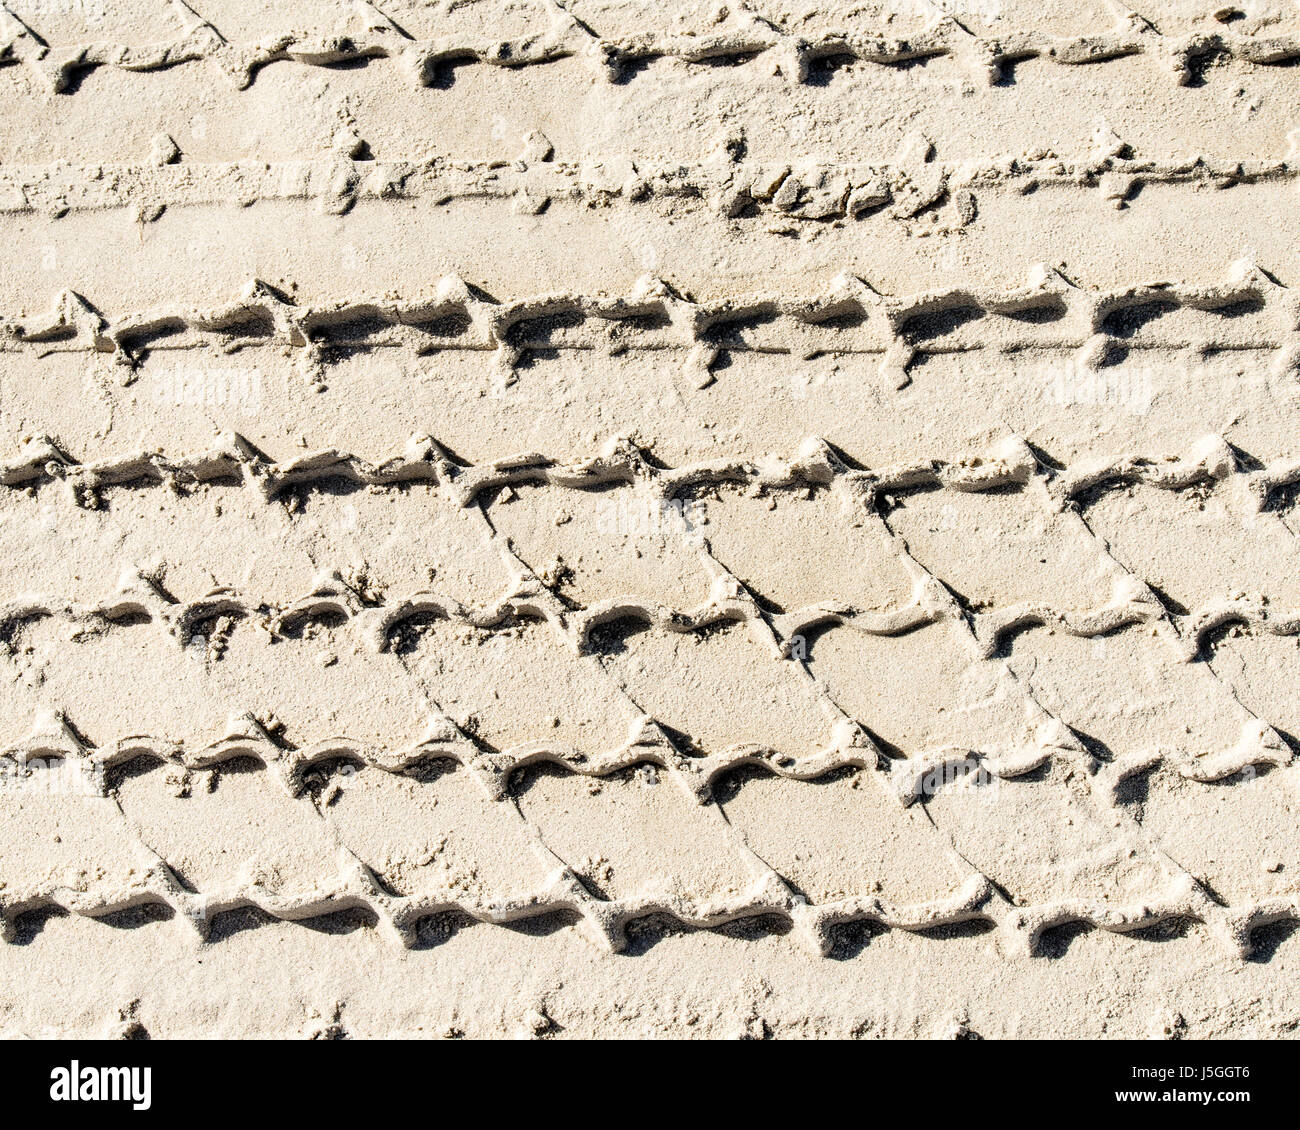 In un pneumatico di un veicolo le vie nella sabbia. La guida è consentita sulla spiaggia di Port Aransas, Texas USA, lasciando tracce della giornata di attività. Foto Stock